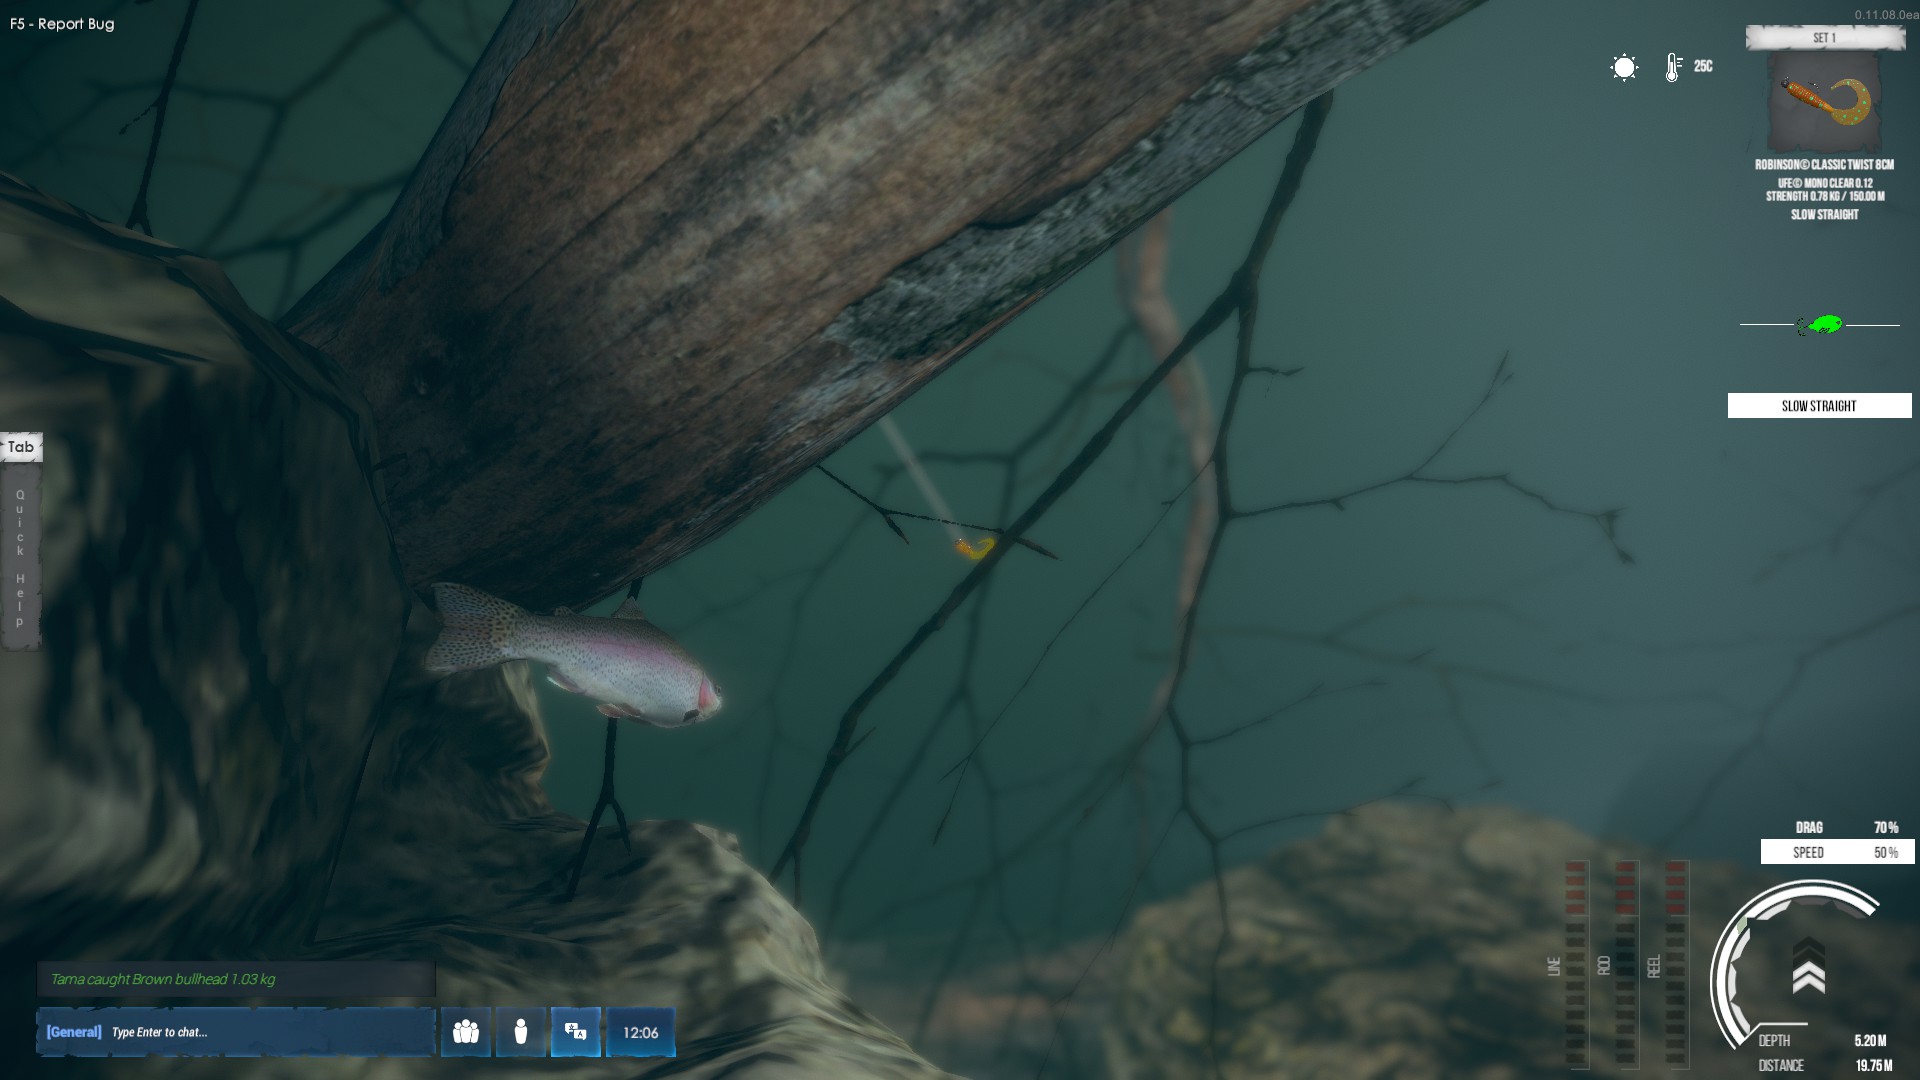 https://www.christcenteredgamer.com/images/ultimatefishing/ultimatefishing2.jpg